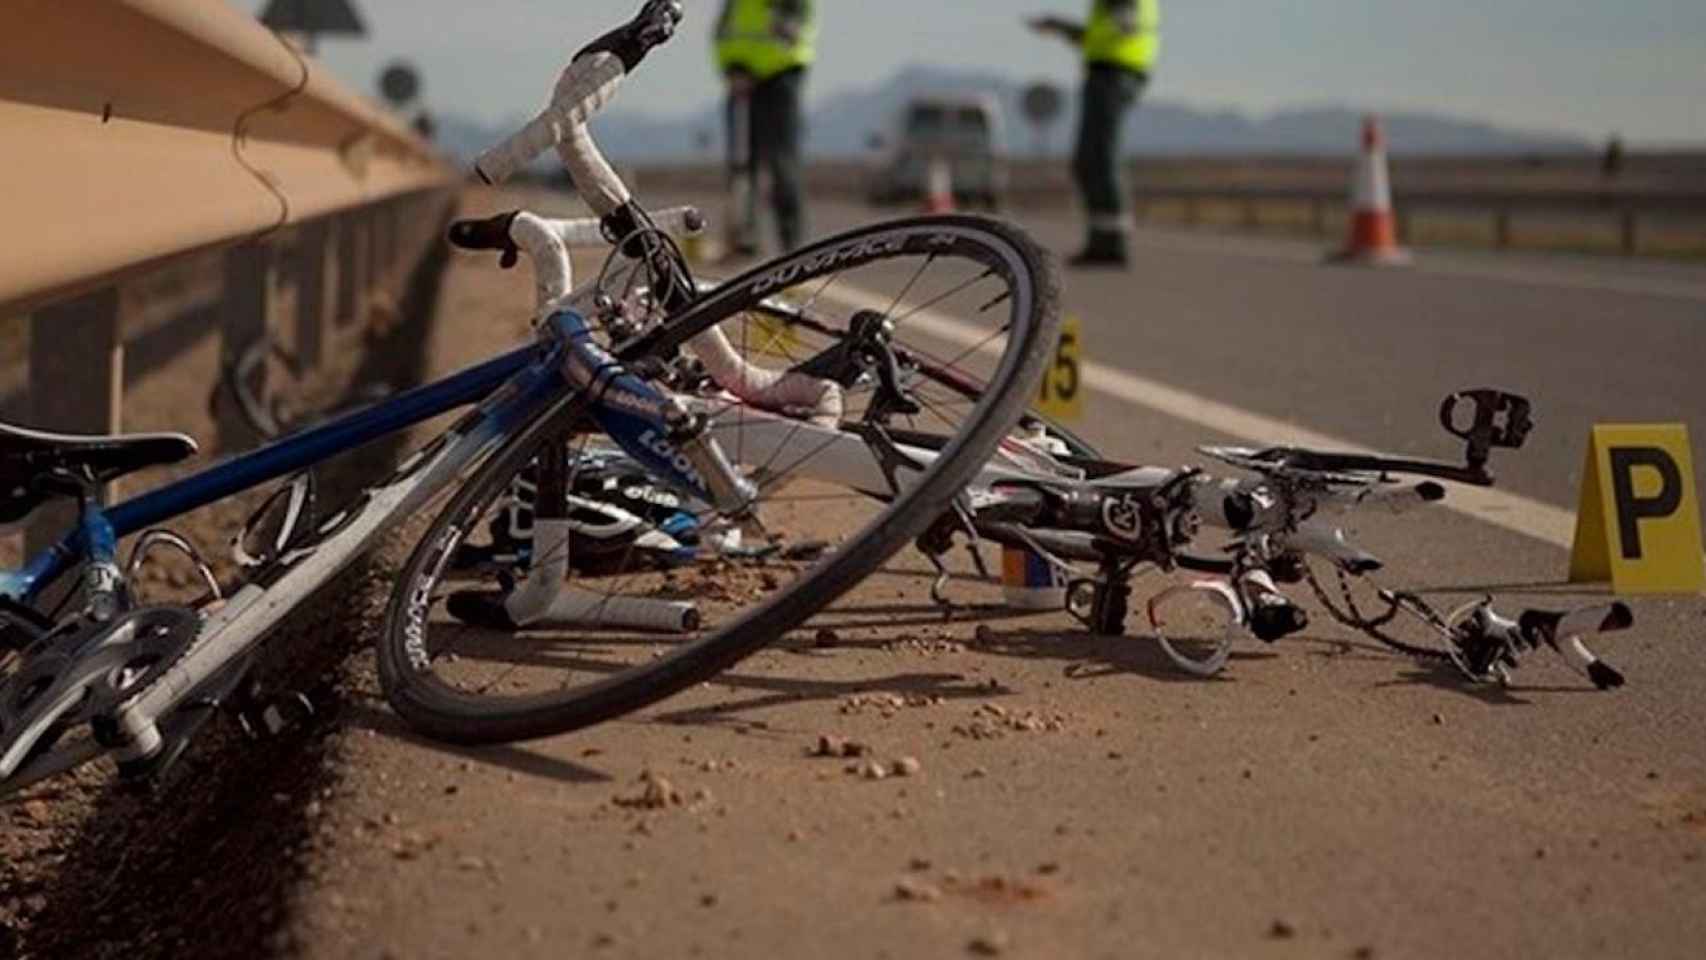 Bici siniestrada tras el accidente de un ciclista en una carretera de Barcelona / ARCHIVO